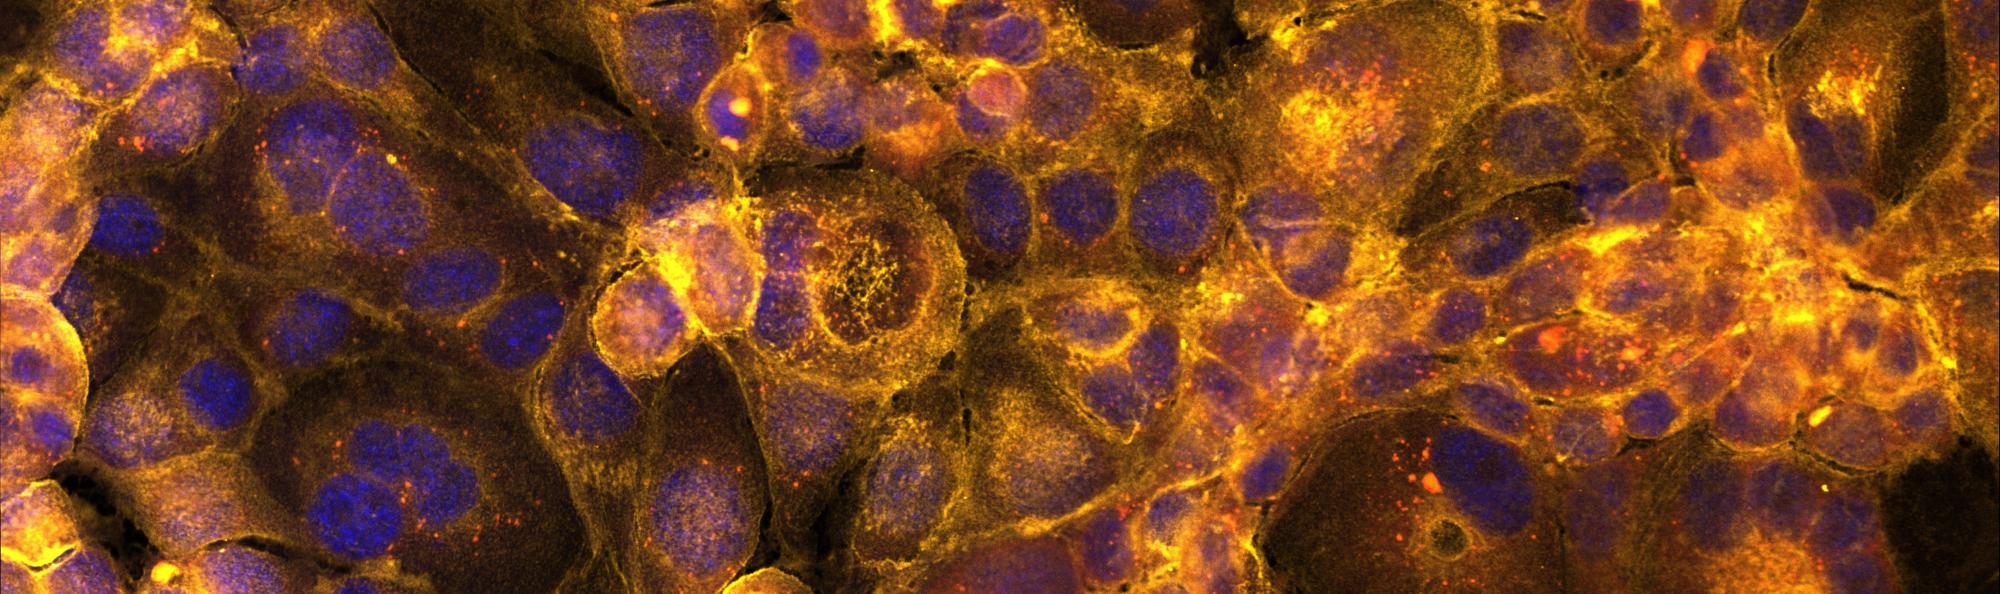 Fluorescent image of hepatocytes by Kaya Wright